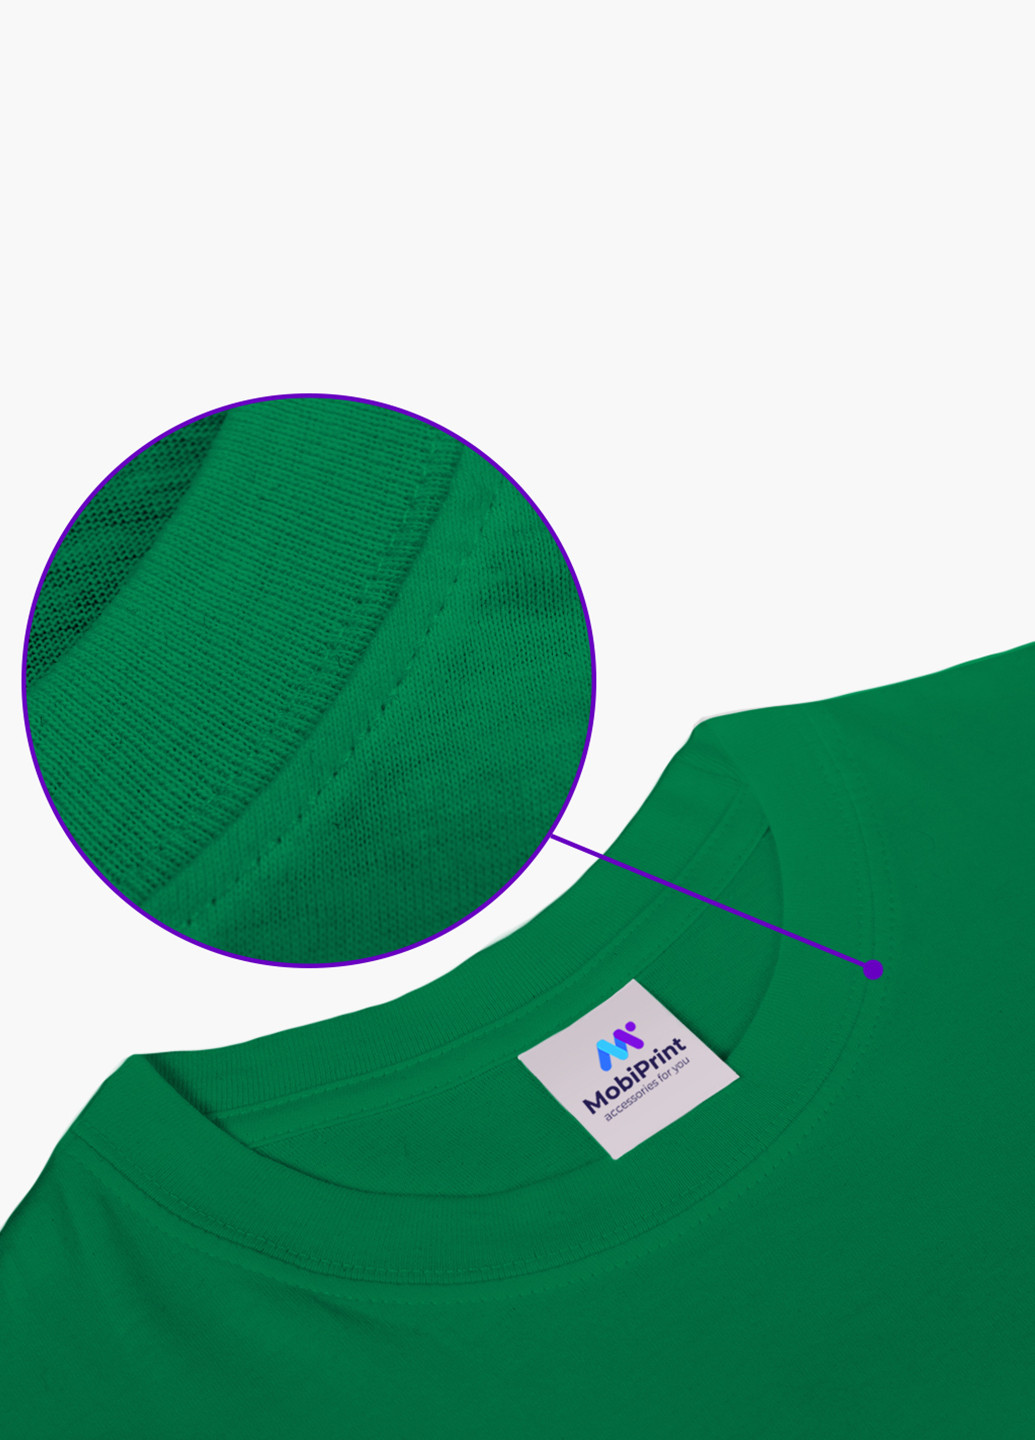 Зеленая демисезонная футболка детская роблокс (roblox)(9224-1713) MobiPrint